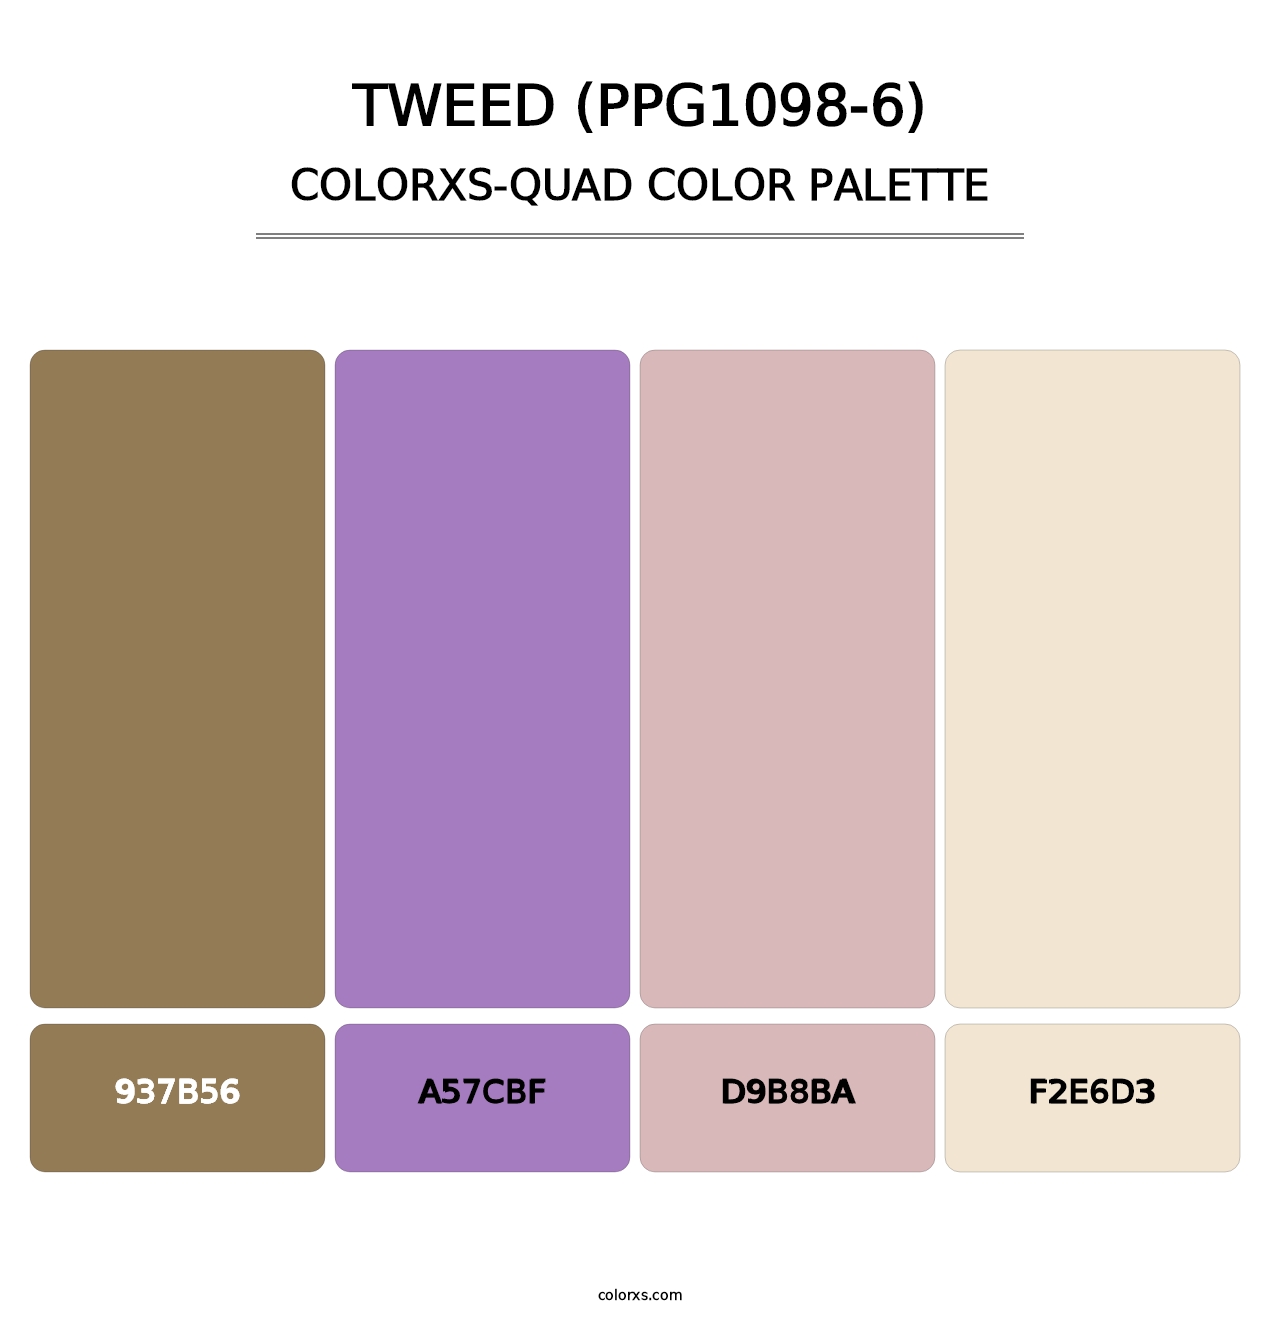 Tweed (PPG1098-6) - Colorxs Quad Palette